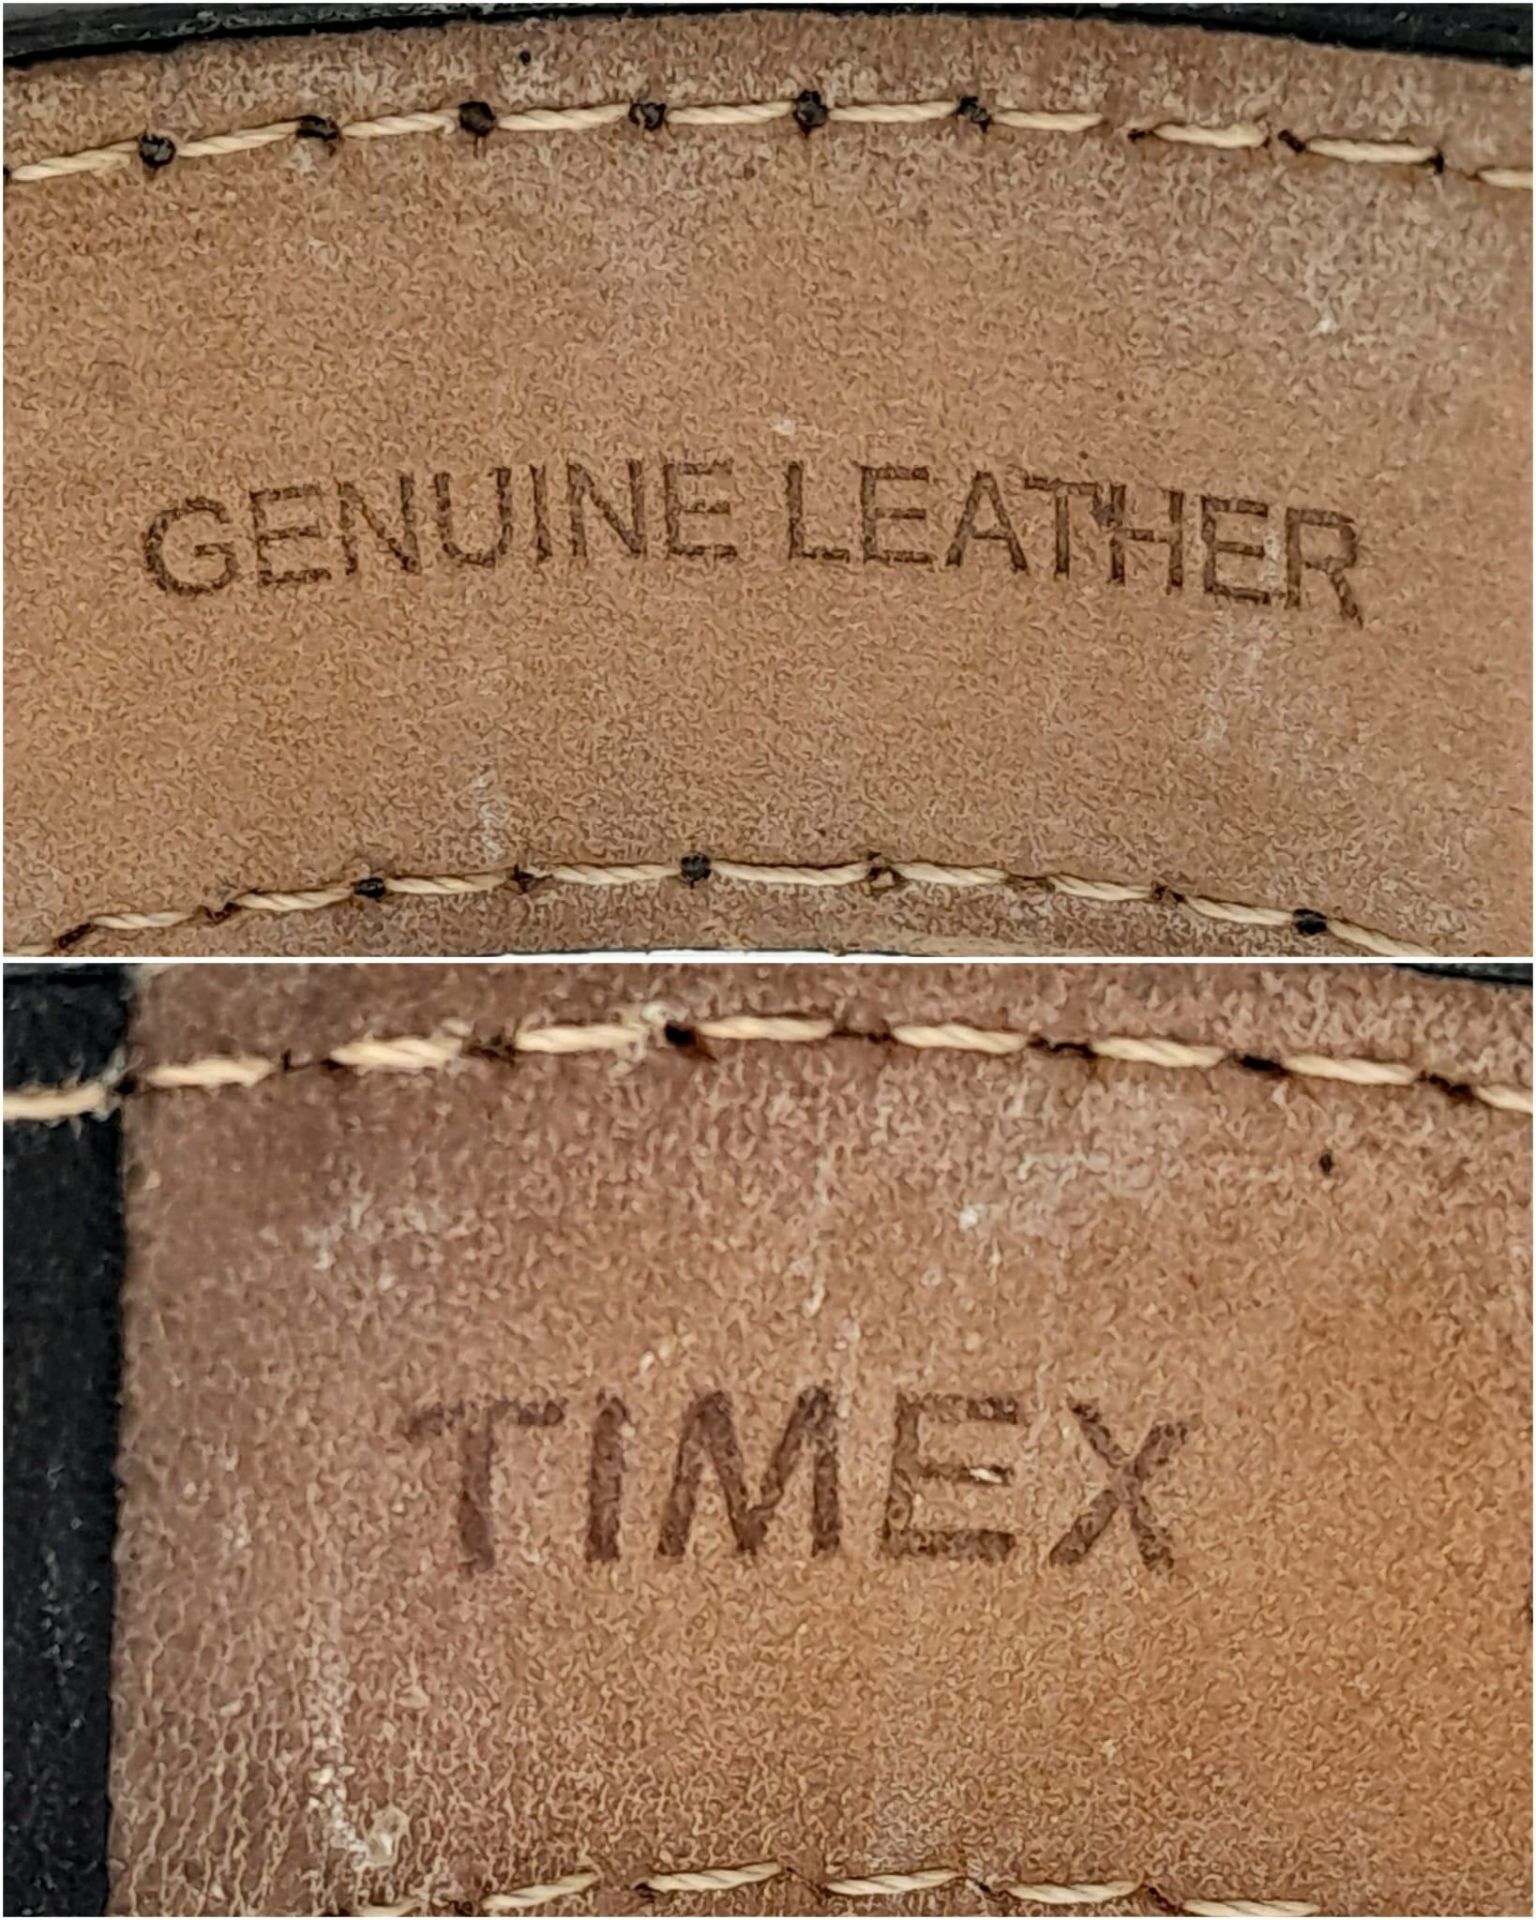 A Timex Intelligent Chronograph Quartz Gents Watch. Brown leather strap. Stainless steel case - - Bild 6 aus 6